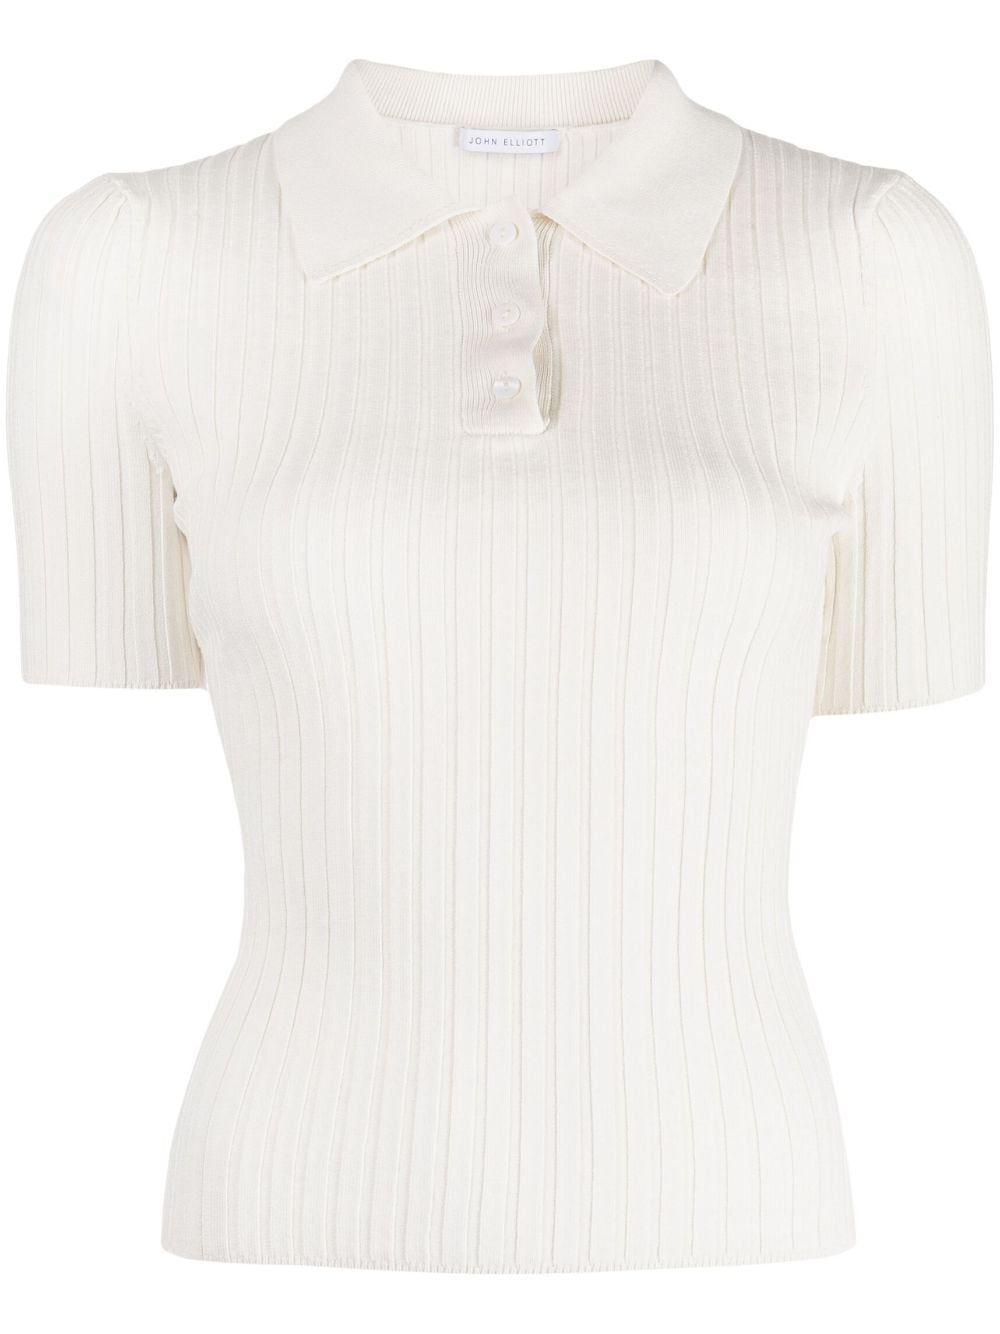 John Elliott Short-sleeve Ribbed-knit Polo Top In White